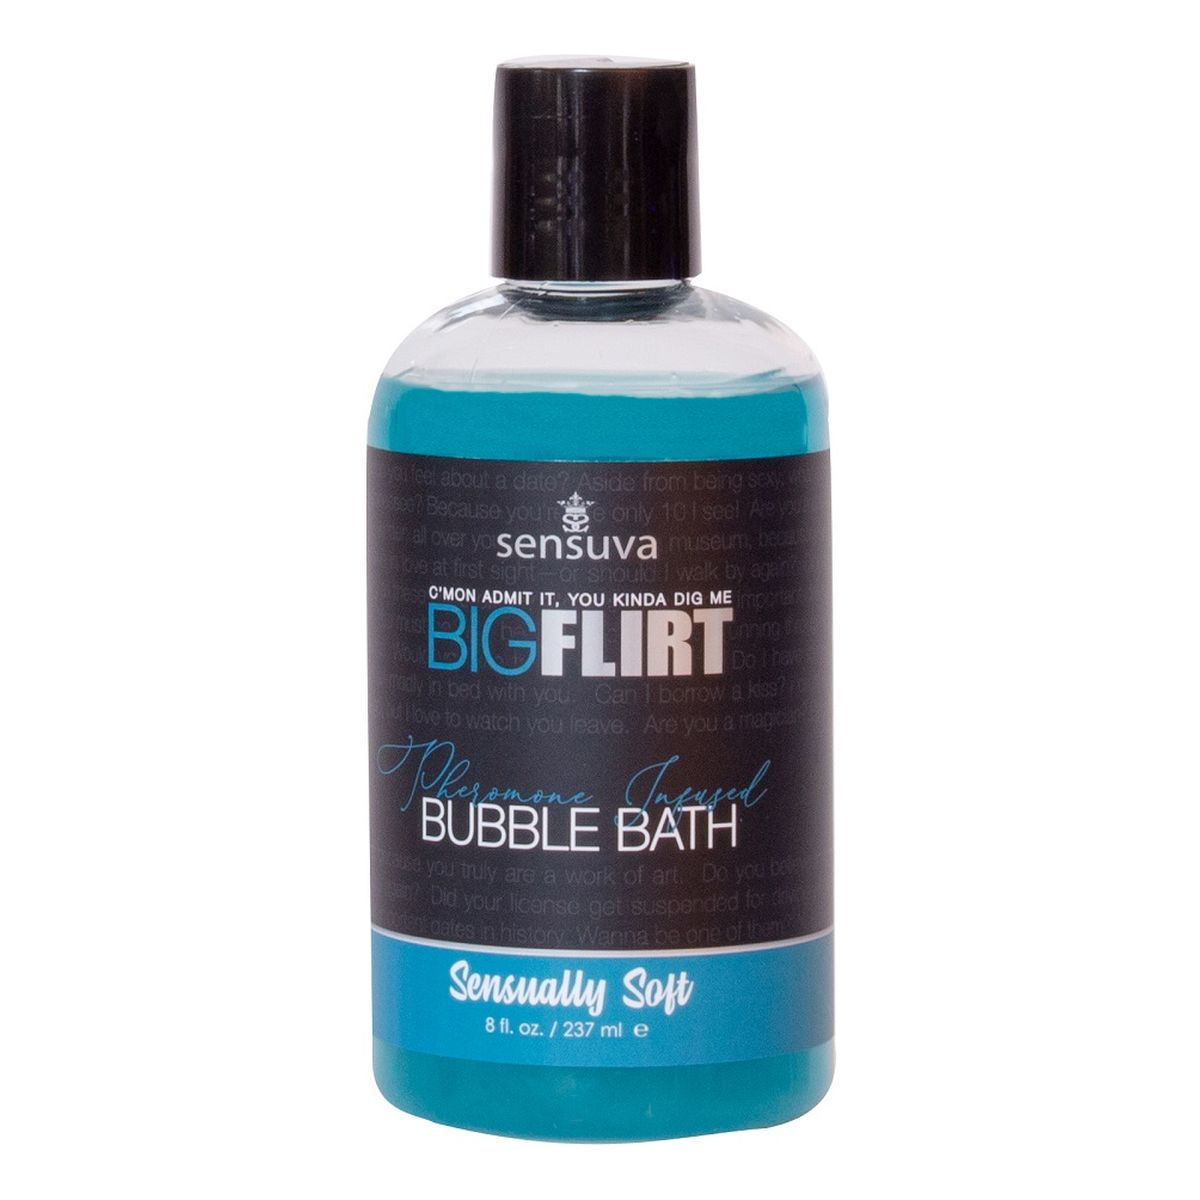 Sensuva Big flirt pheromone infused bubble bath płyn do kąpieli z feromonami sensually soft 237ml